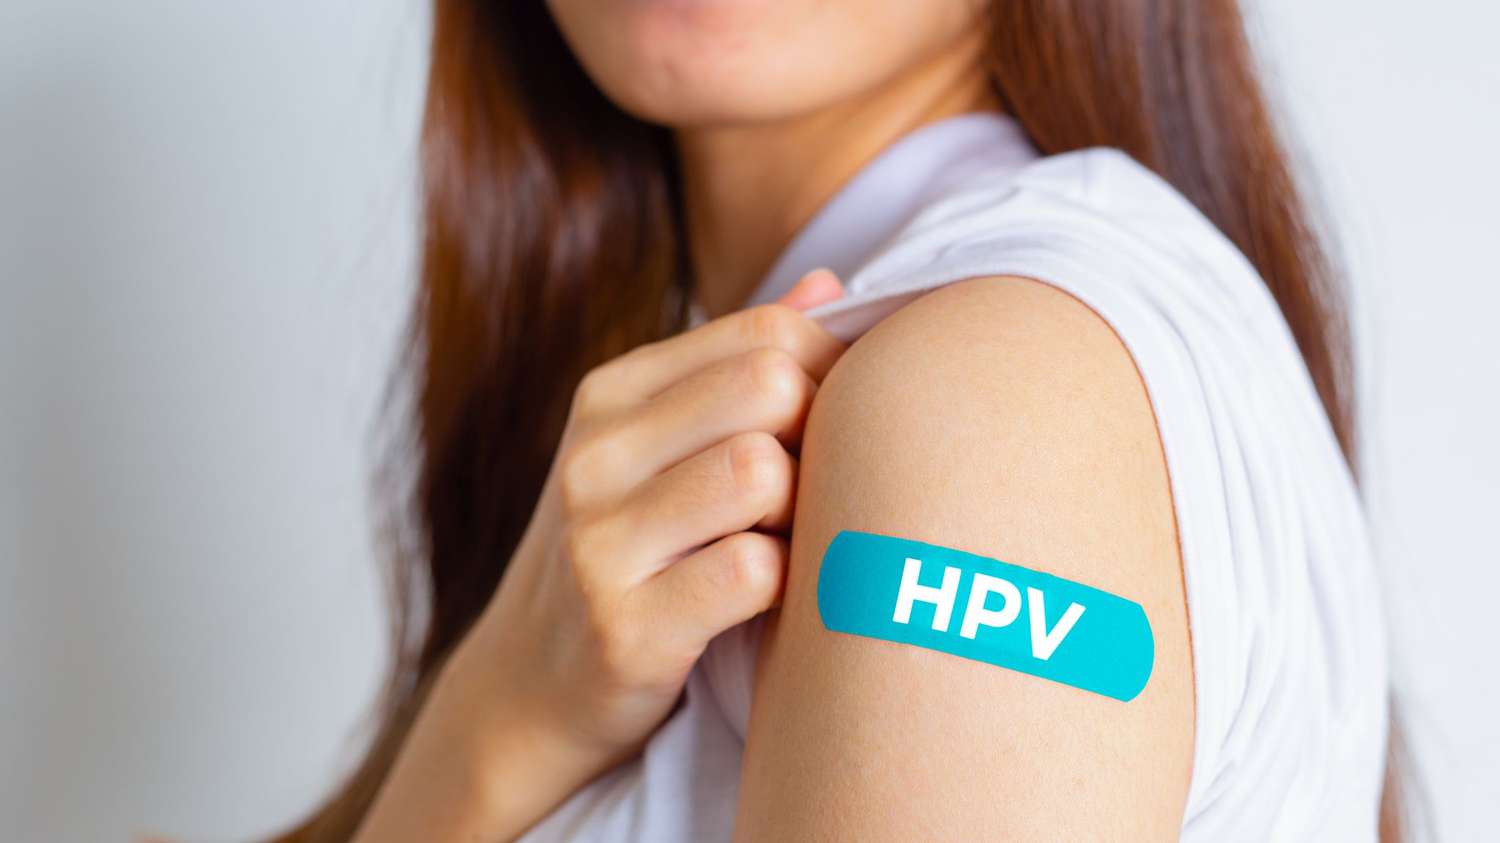 Recomendaciones para prevenir el HPV y creencias que no son ciertas